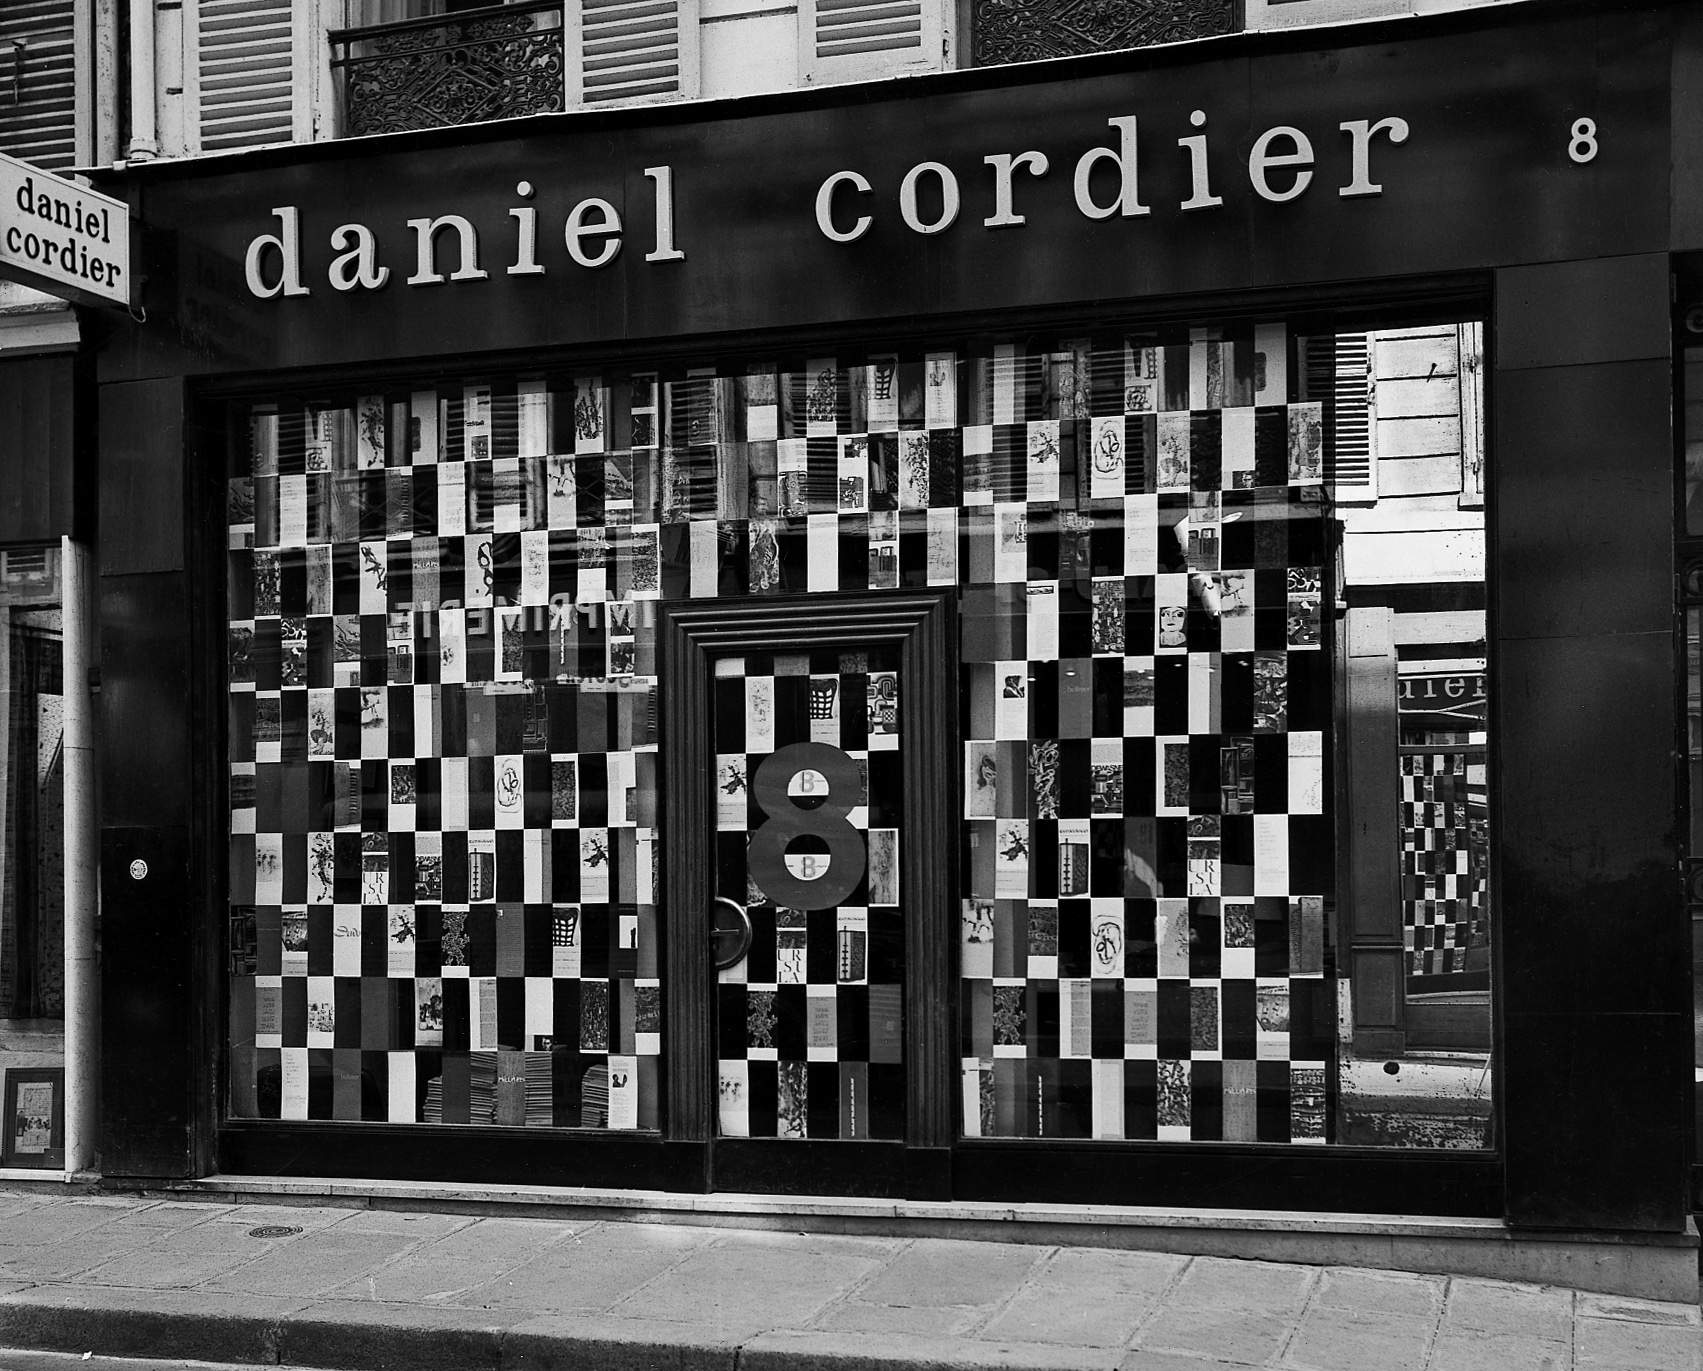 Verlaine Galerie Daniel Cordier - 8 ans d'agitation